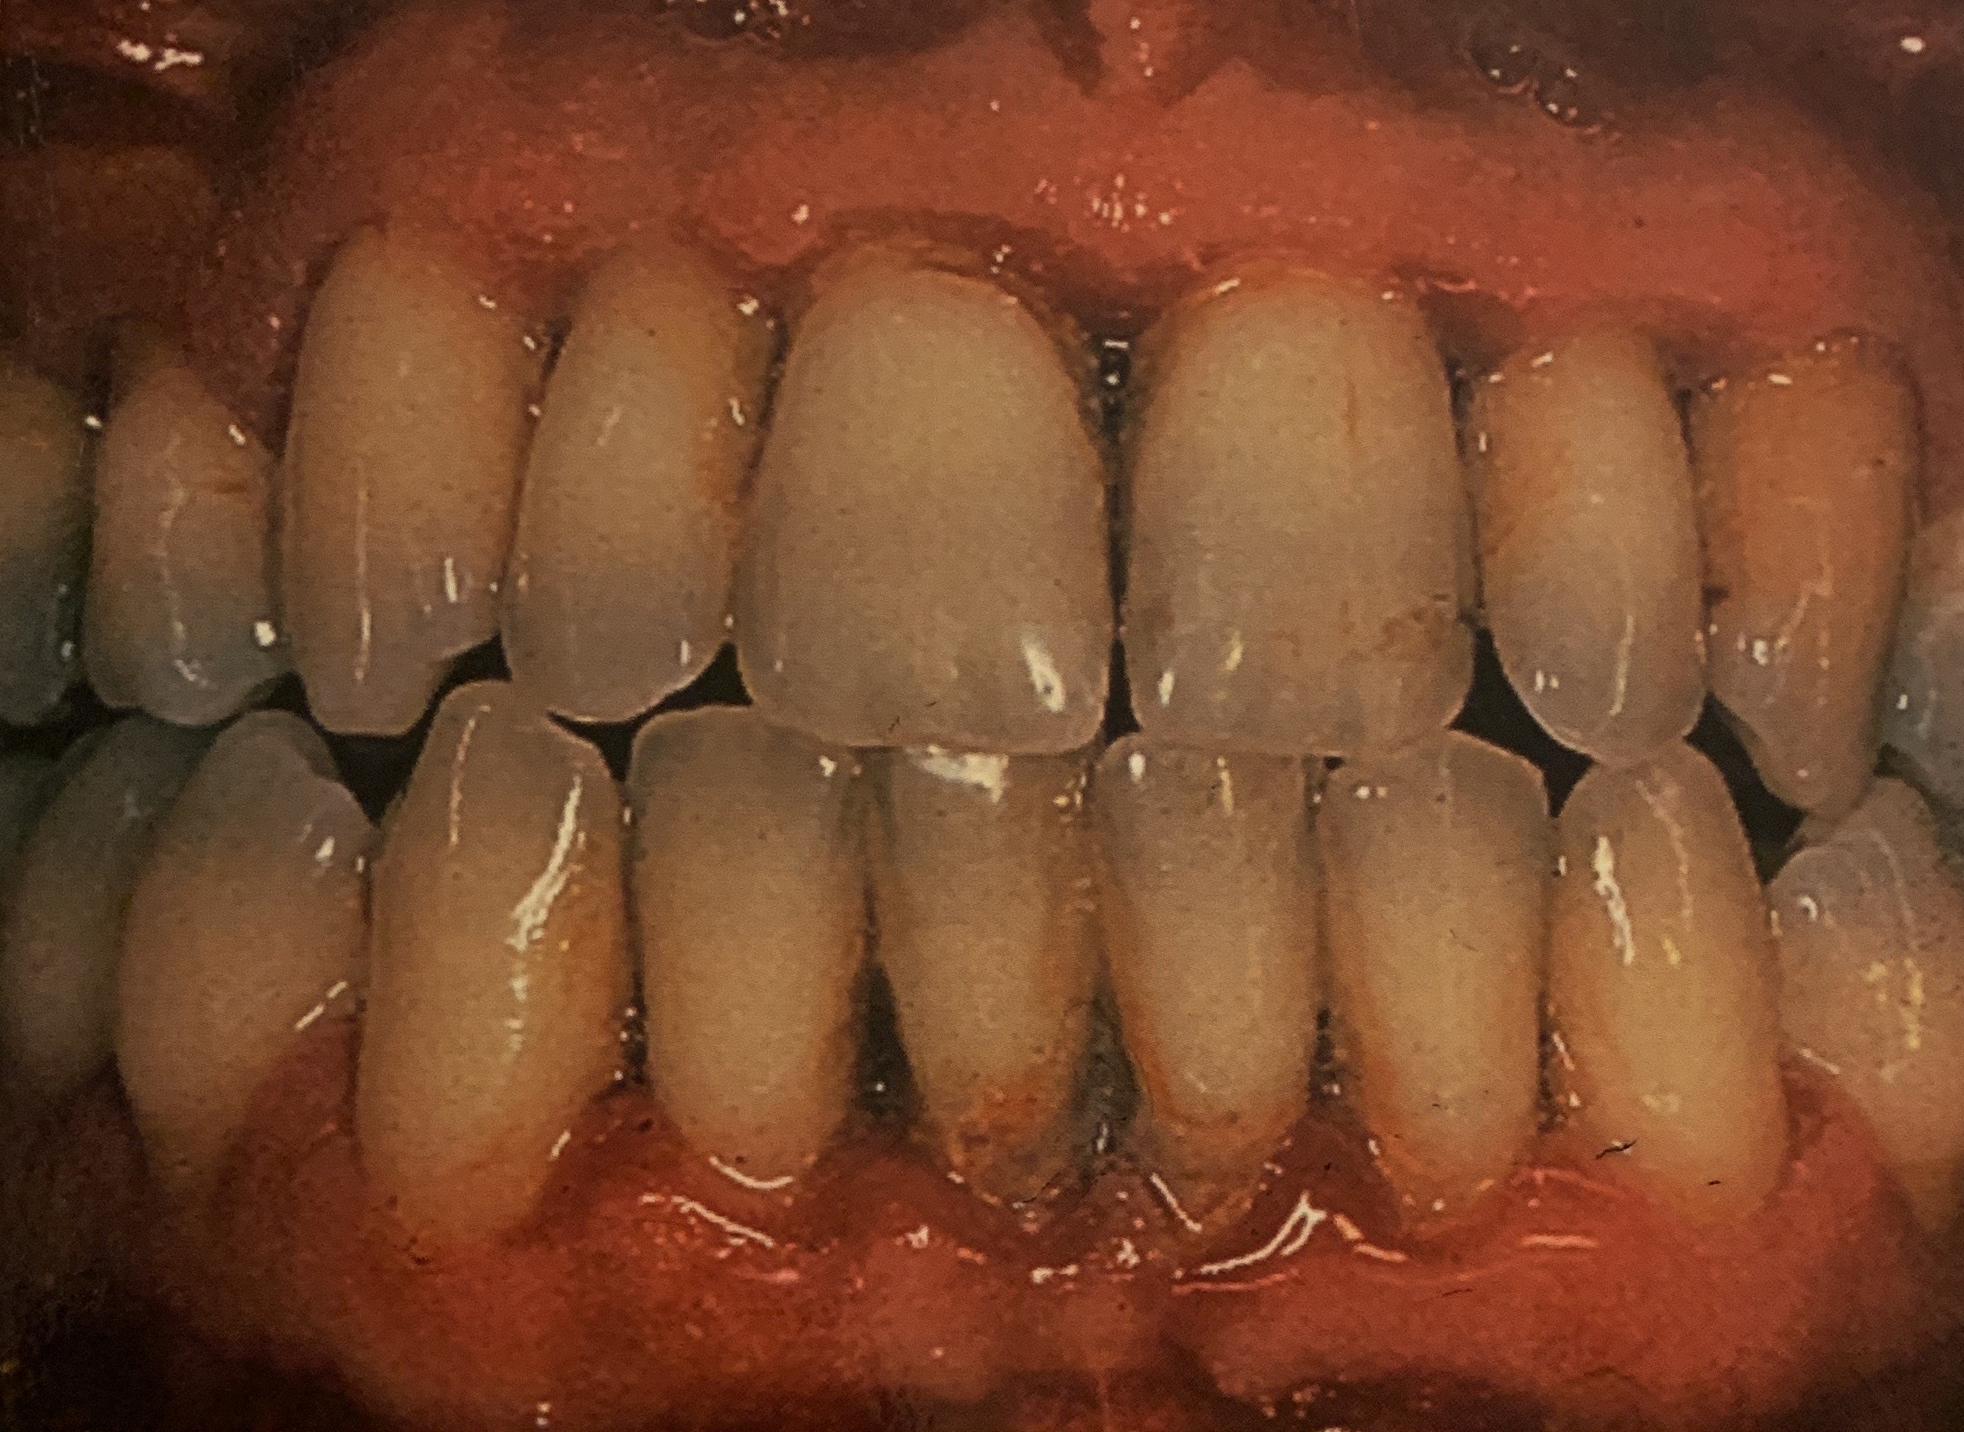 Gum Disease in Reston, VA